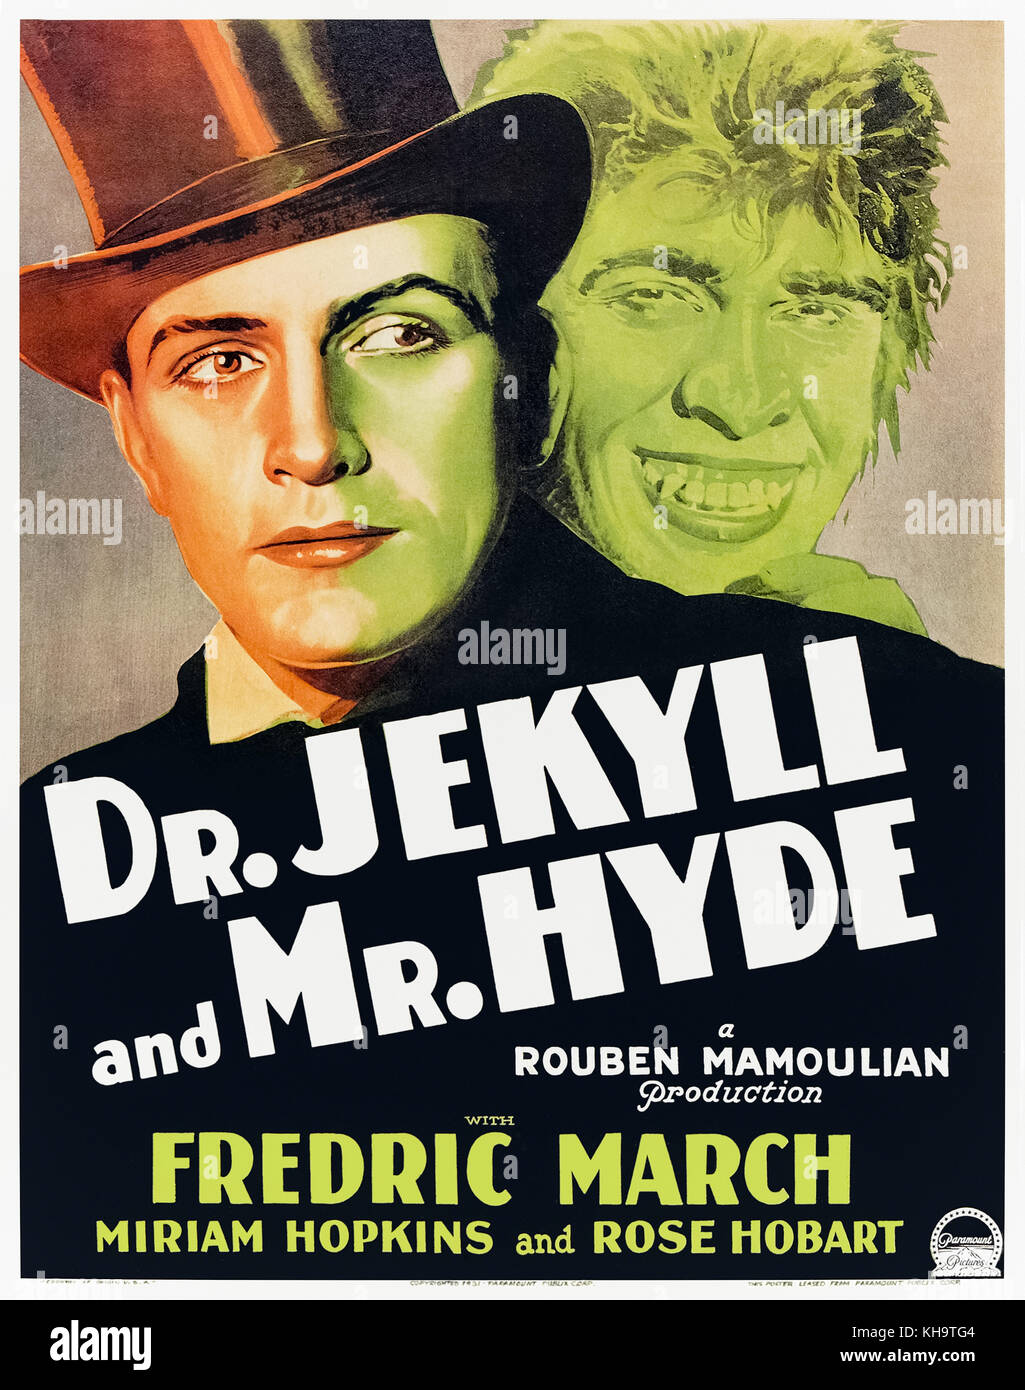 Le Dr Jekyll et M. Hyde (1931) réalisé par Rouben Mamoulian et avec Fredric March, Miriam Hopkins et Rose Hobart. Fredric March a remporté un Academy Award du meilleur acteur pour son rôle de Dr Jekyll et son alter ego incontrôlable Mr Hyde. Banque D'Images